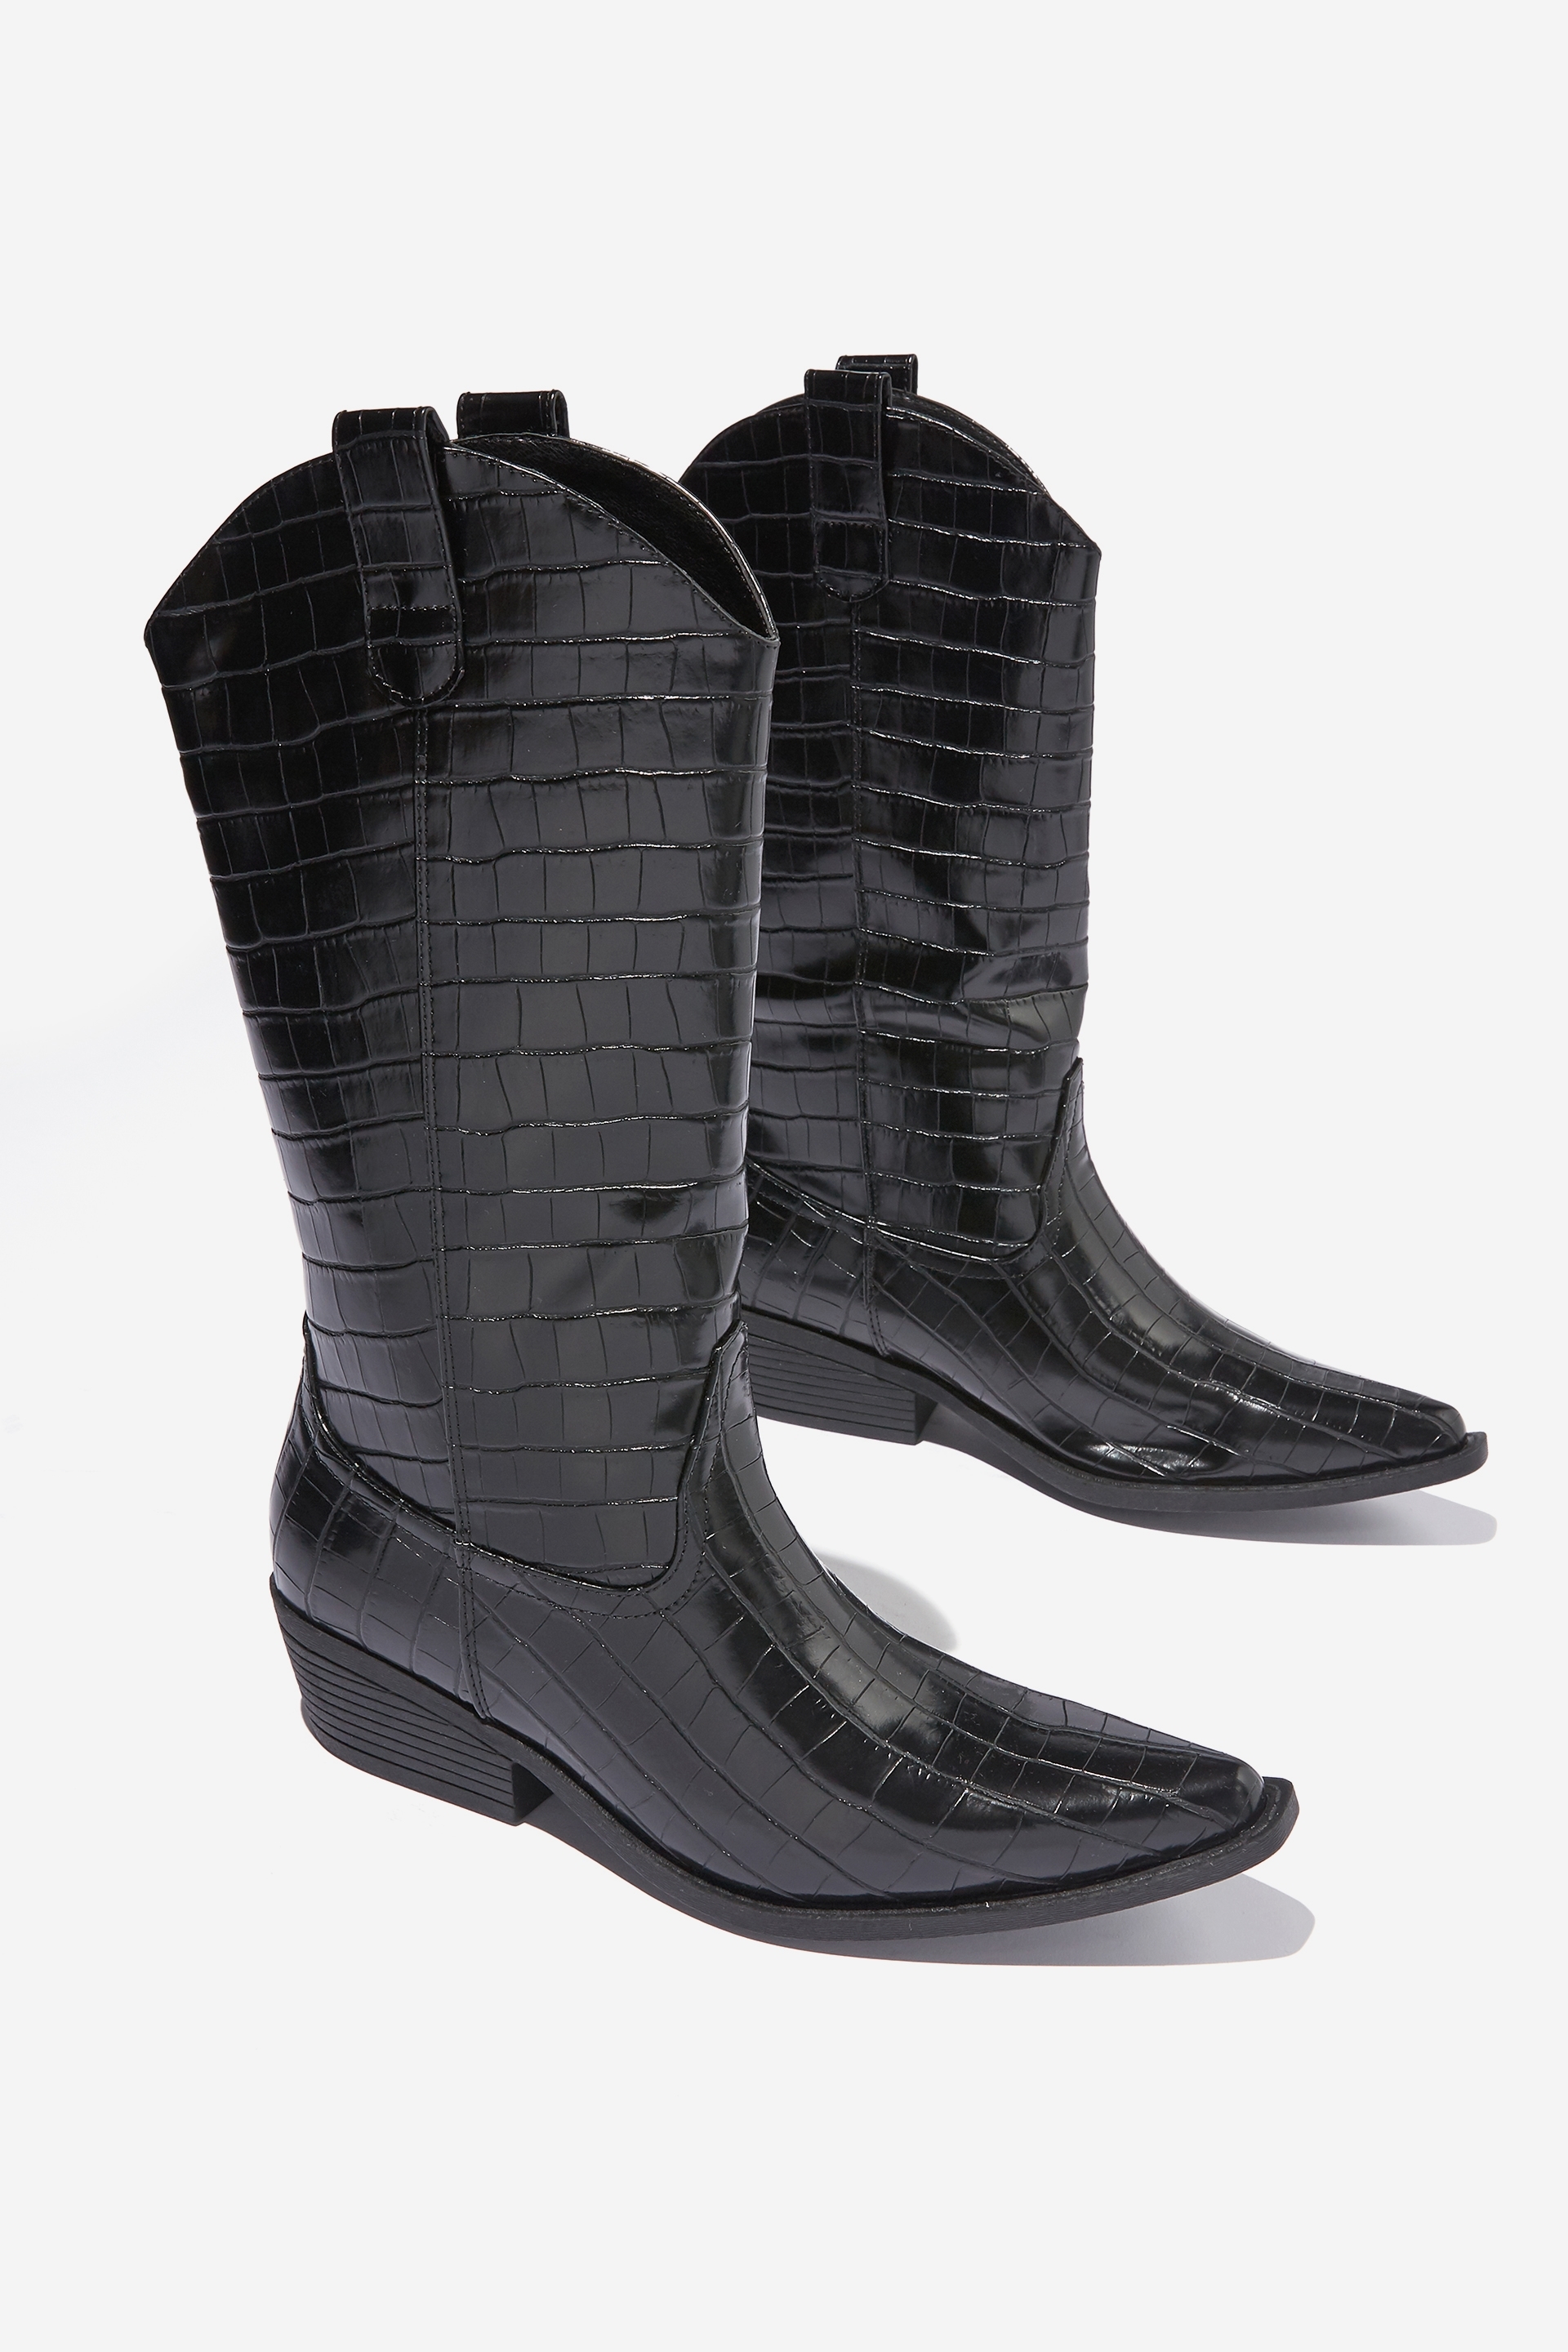 Rubi - Devon Tall Western Boot - Black croc